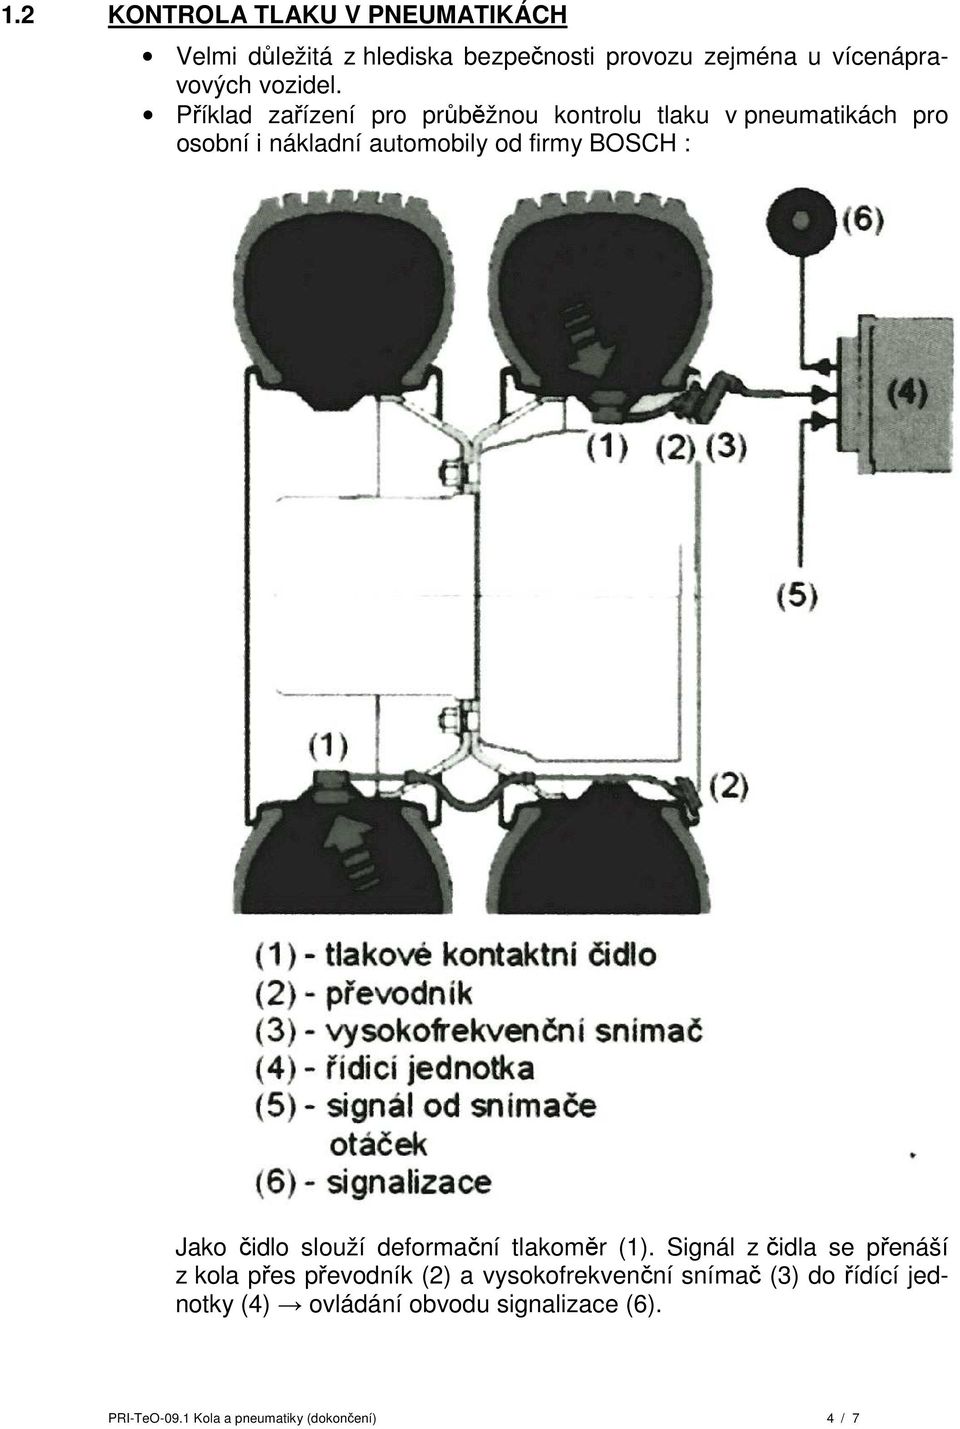 Jako čidlo slouží deformační tlakoměr (1).